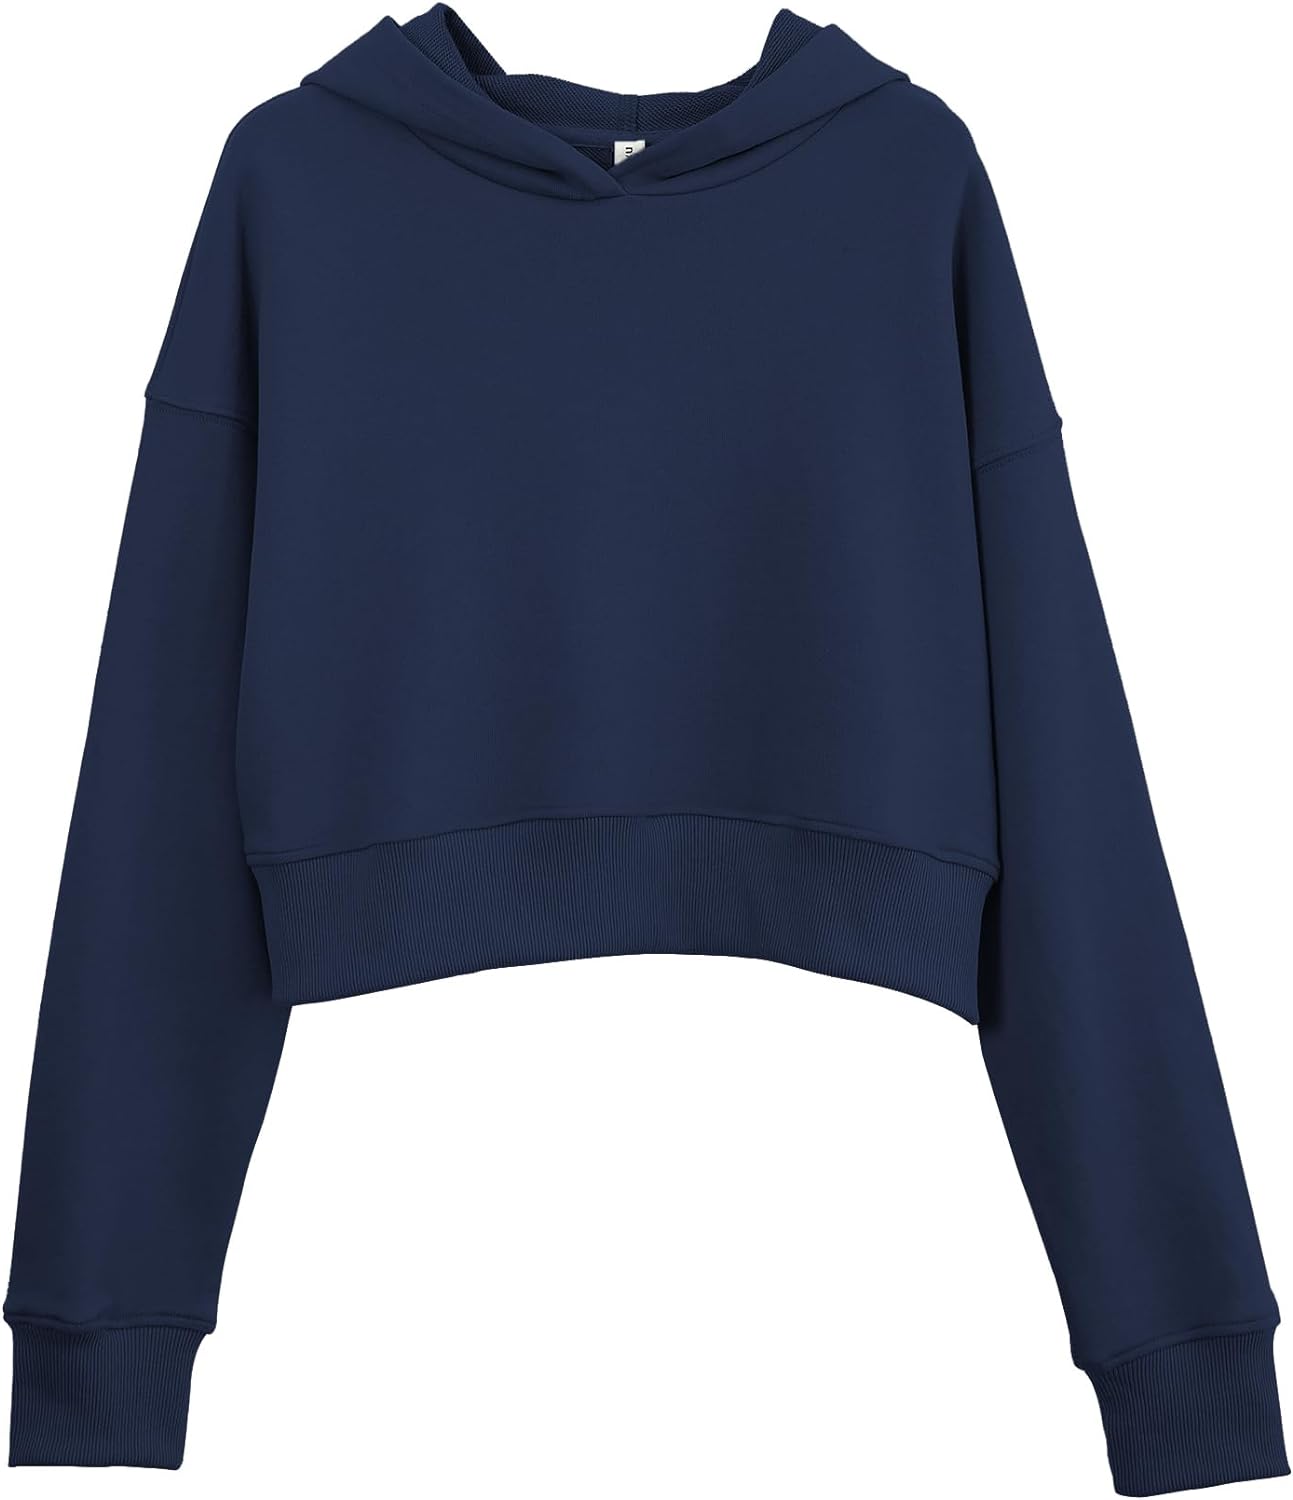 NTG Fad Cetacean Blue / Large Amazhiyu Women’s Cropped Hoodie with Hood Casual Long Sleeve Crop Top Sweatshirt